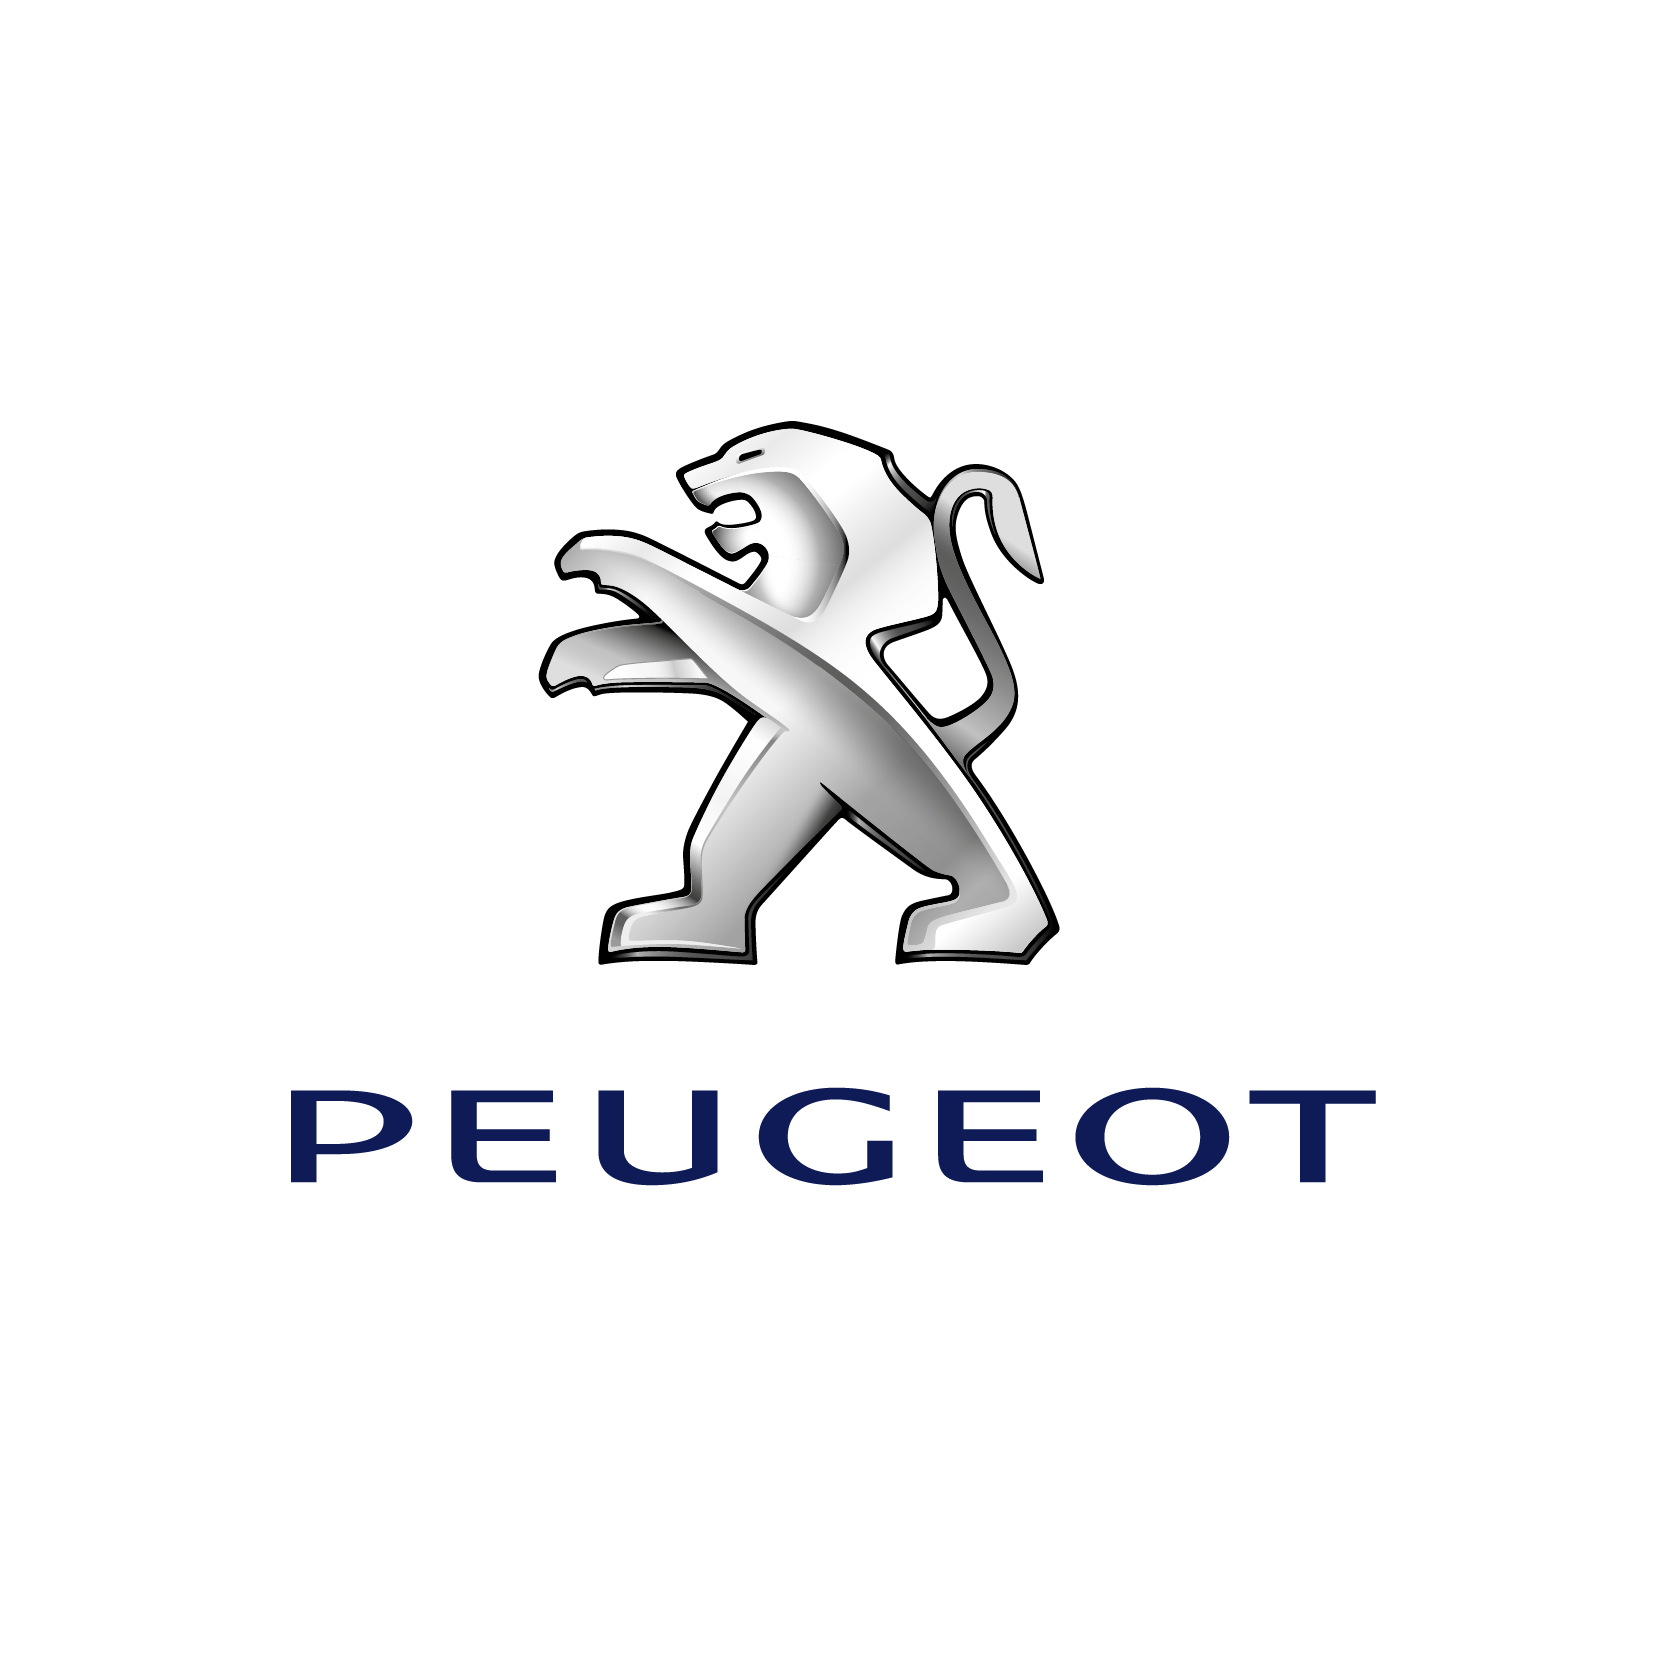 PEUGEOT © Peugeot